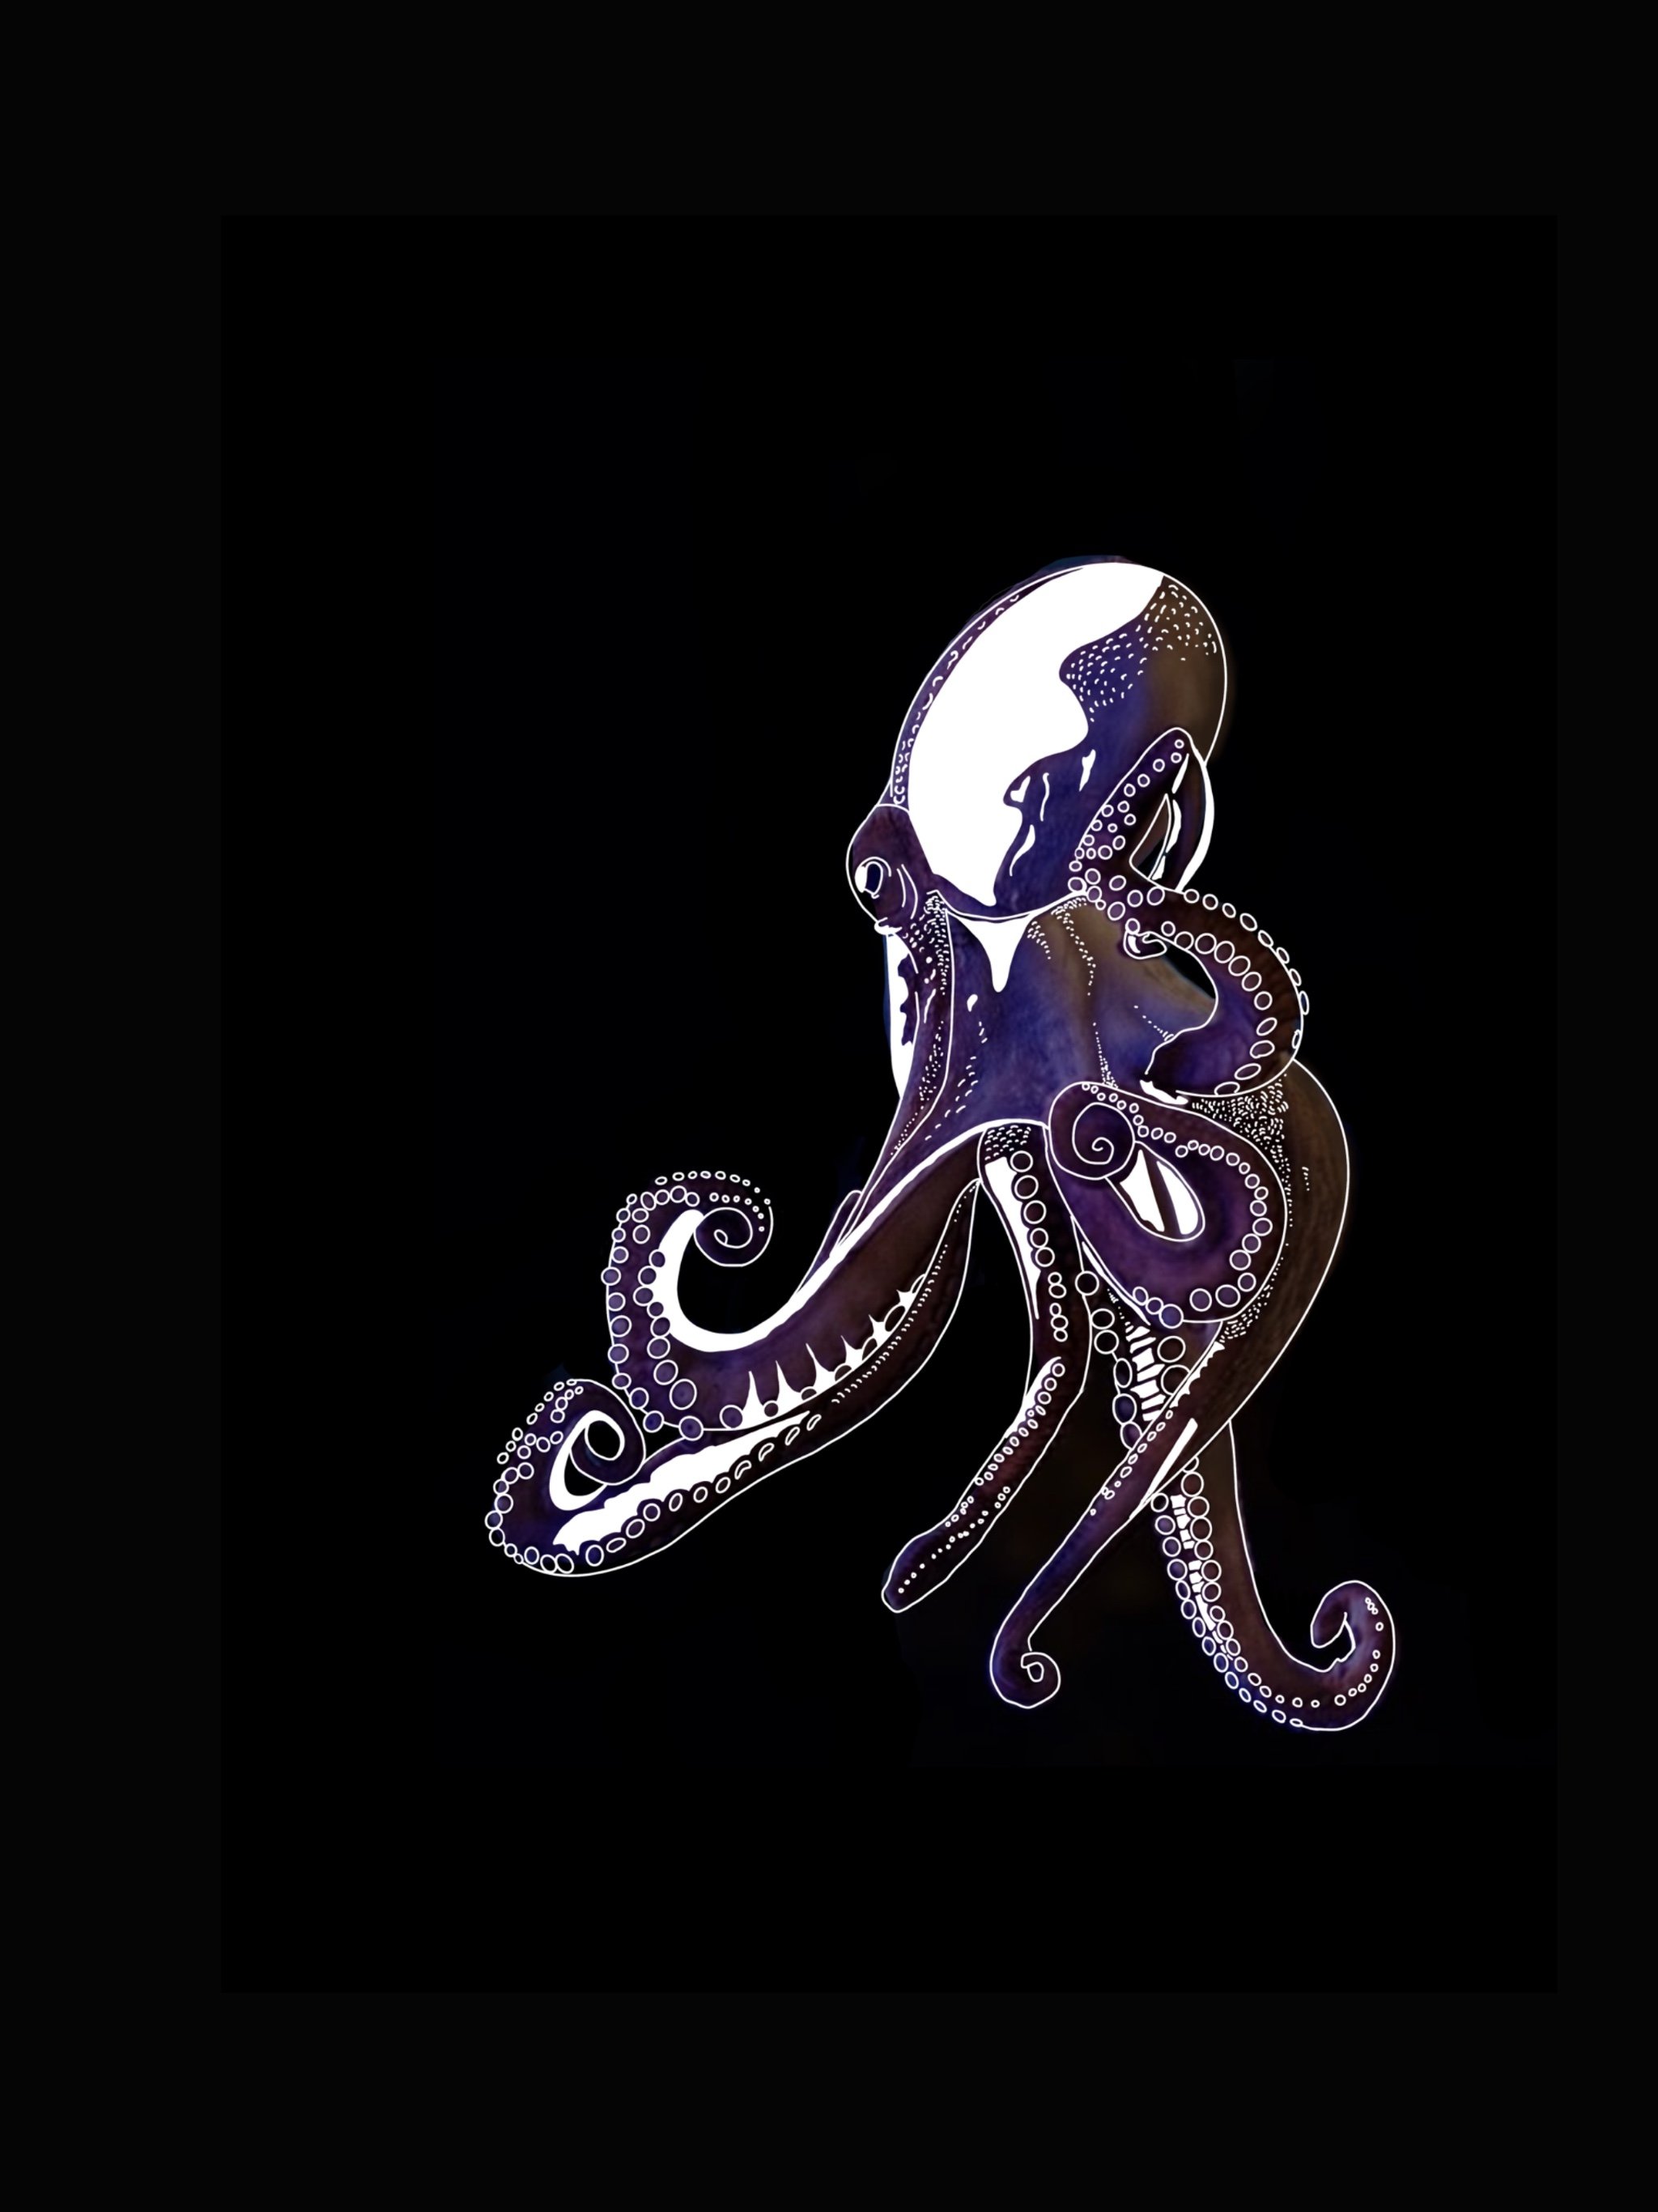   The Octopus     Medium: Digital Art    by Aspen Garner  